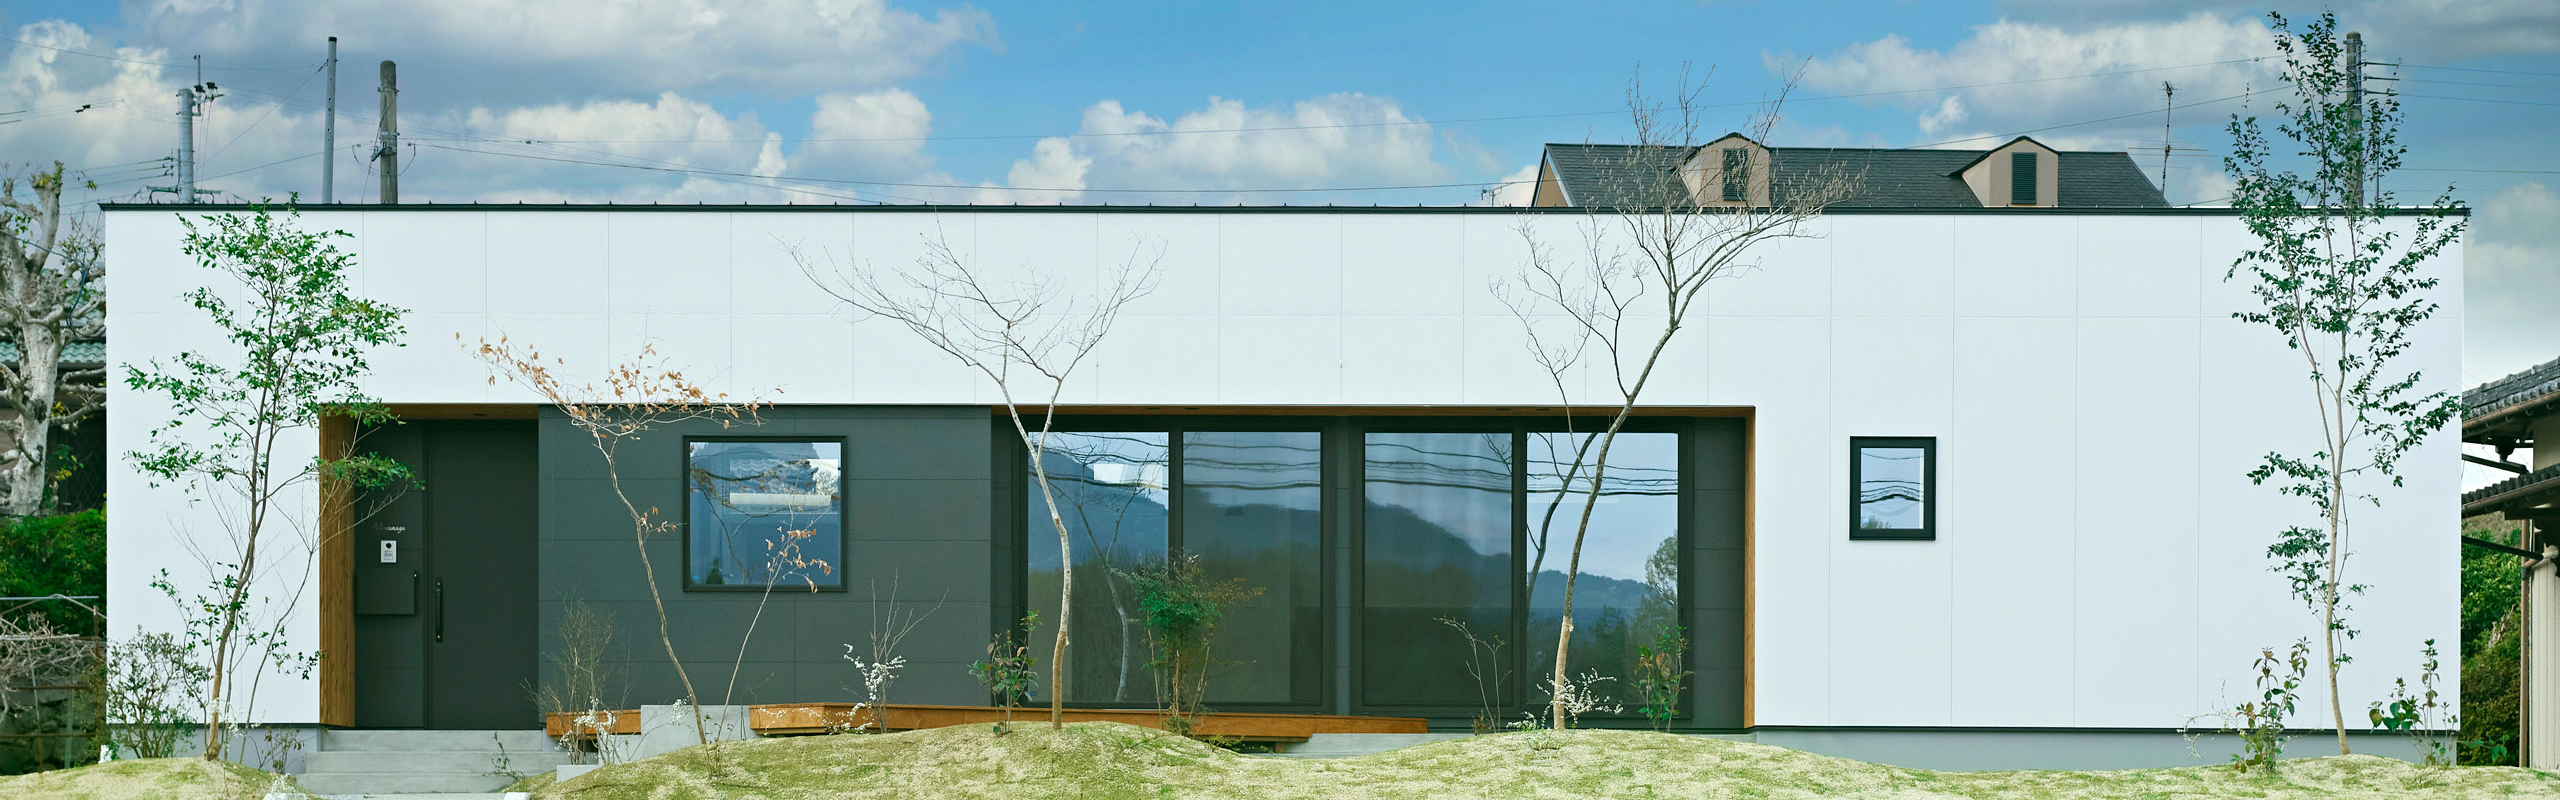 熊本の山間部に建つ眺望の平屋